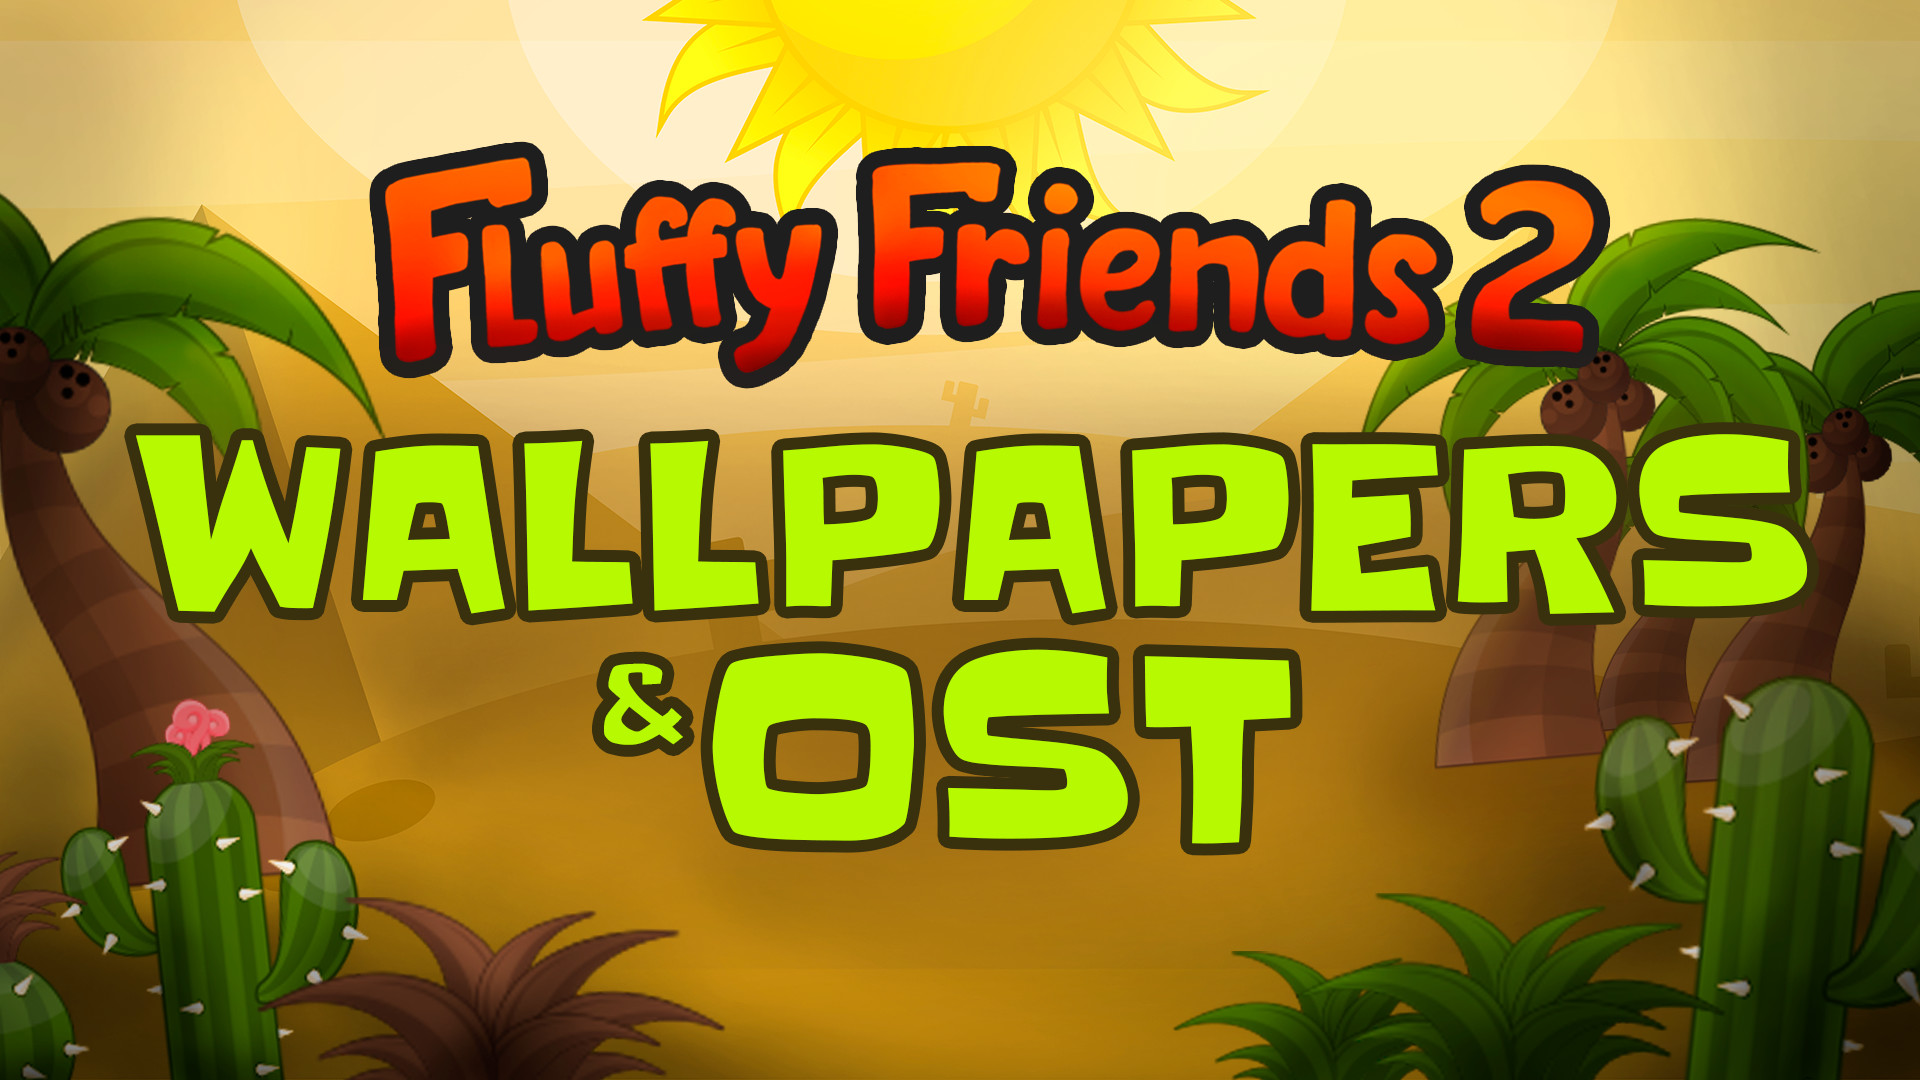 Fluffy Friends 2 - Wallpapers & OST Featured Screenshot #1